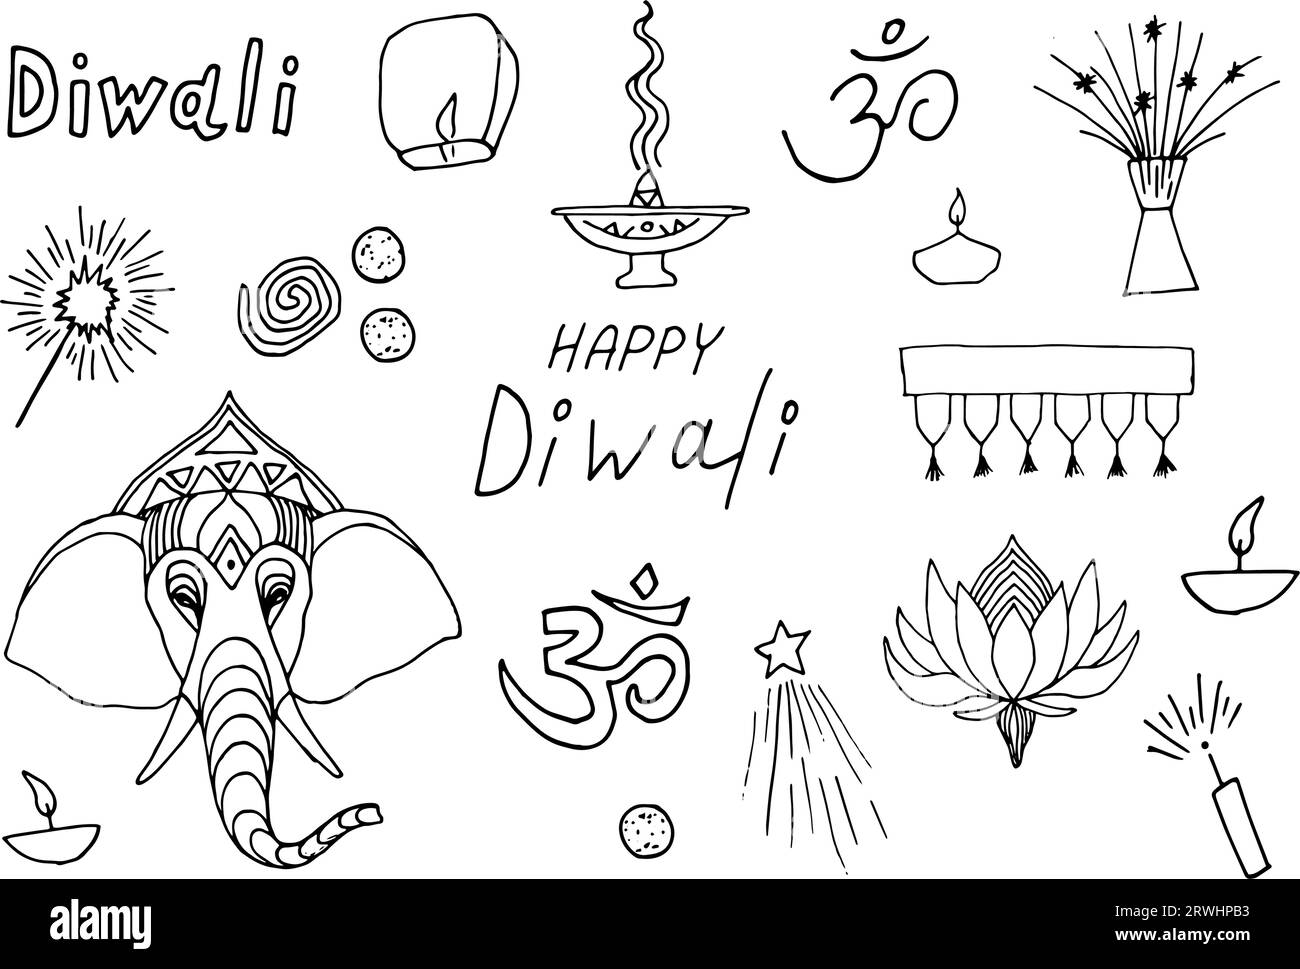 Alles Gute Für Diwali. Indische Festival-Doodling-Sammlung. Verschiedene Dinge zum Feiern. Handgezeichnete Grafiken Stock Vektor